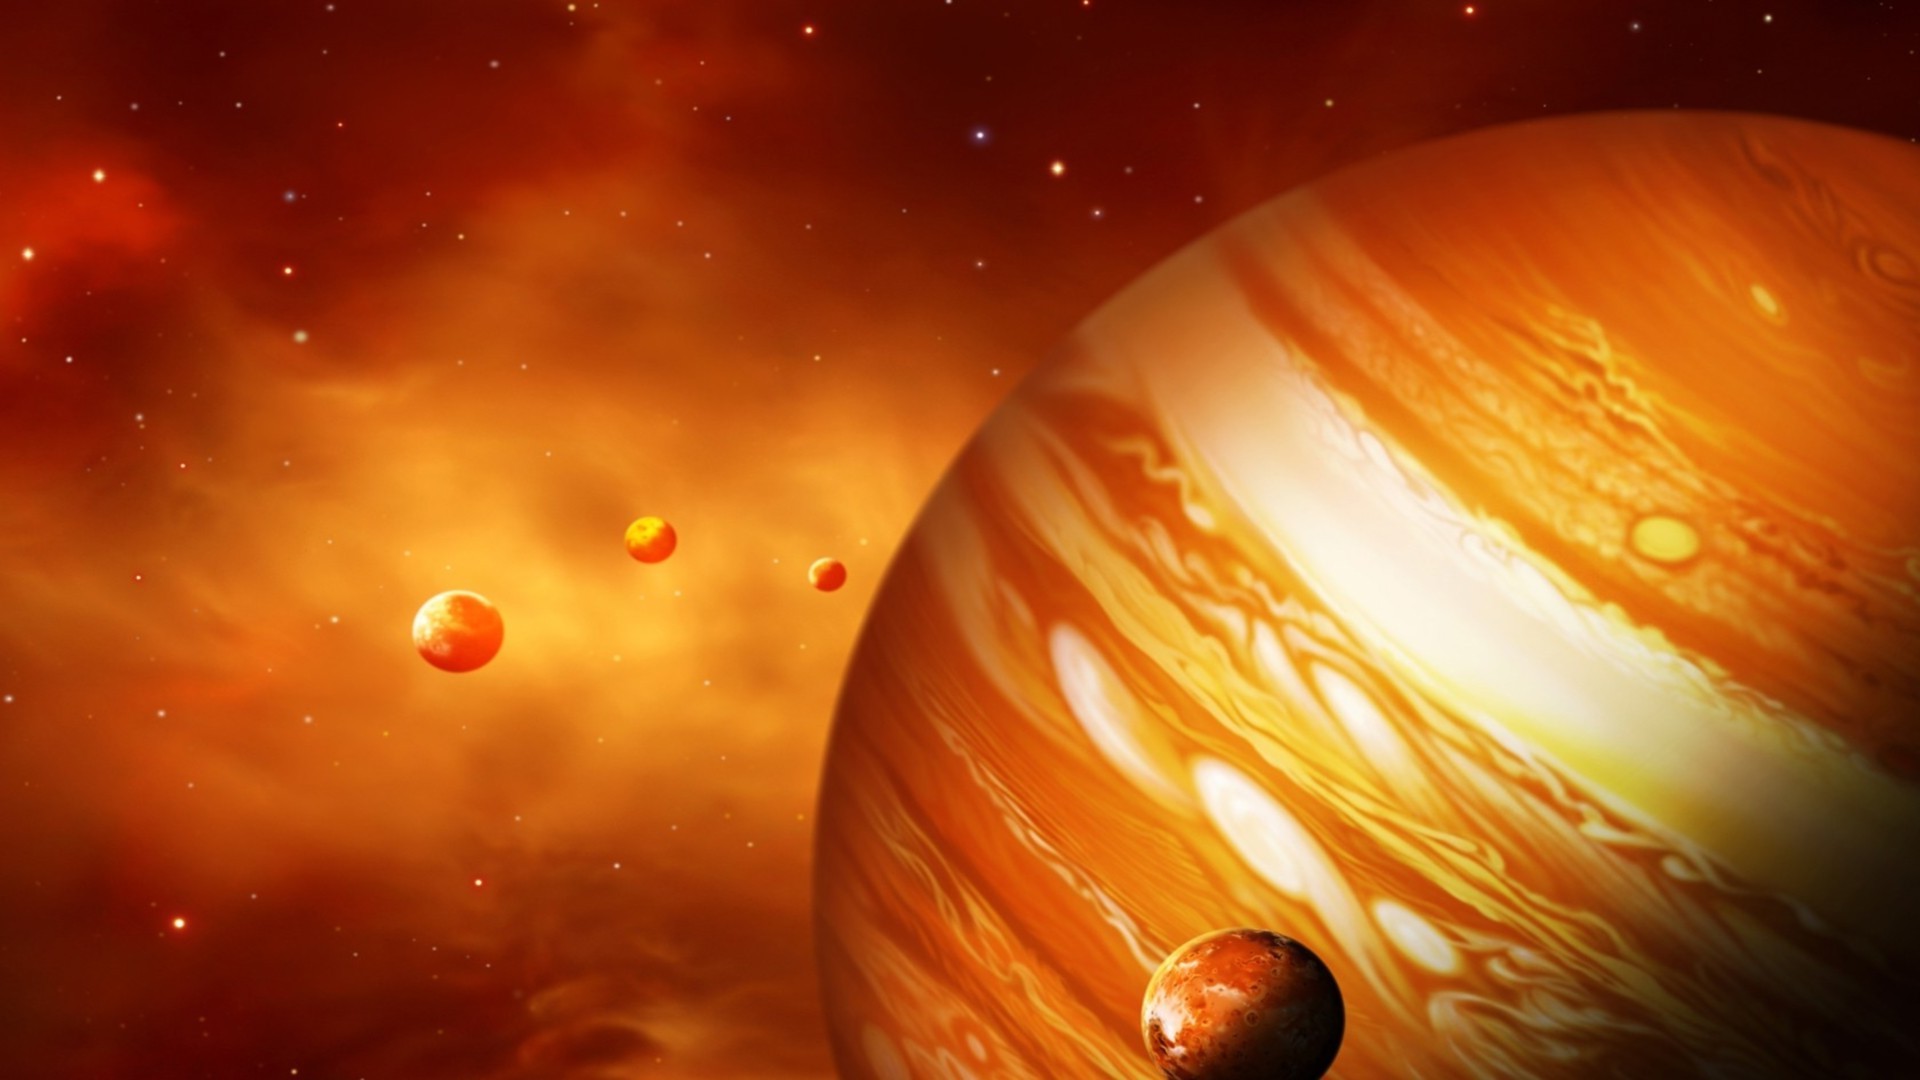 jupiter tapete,orange,astronomisches objekt,planet,weltraum,platz